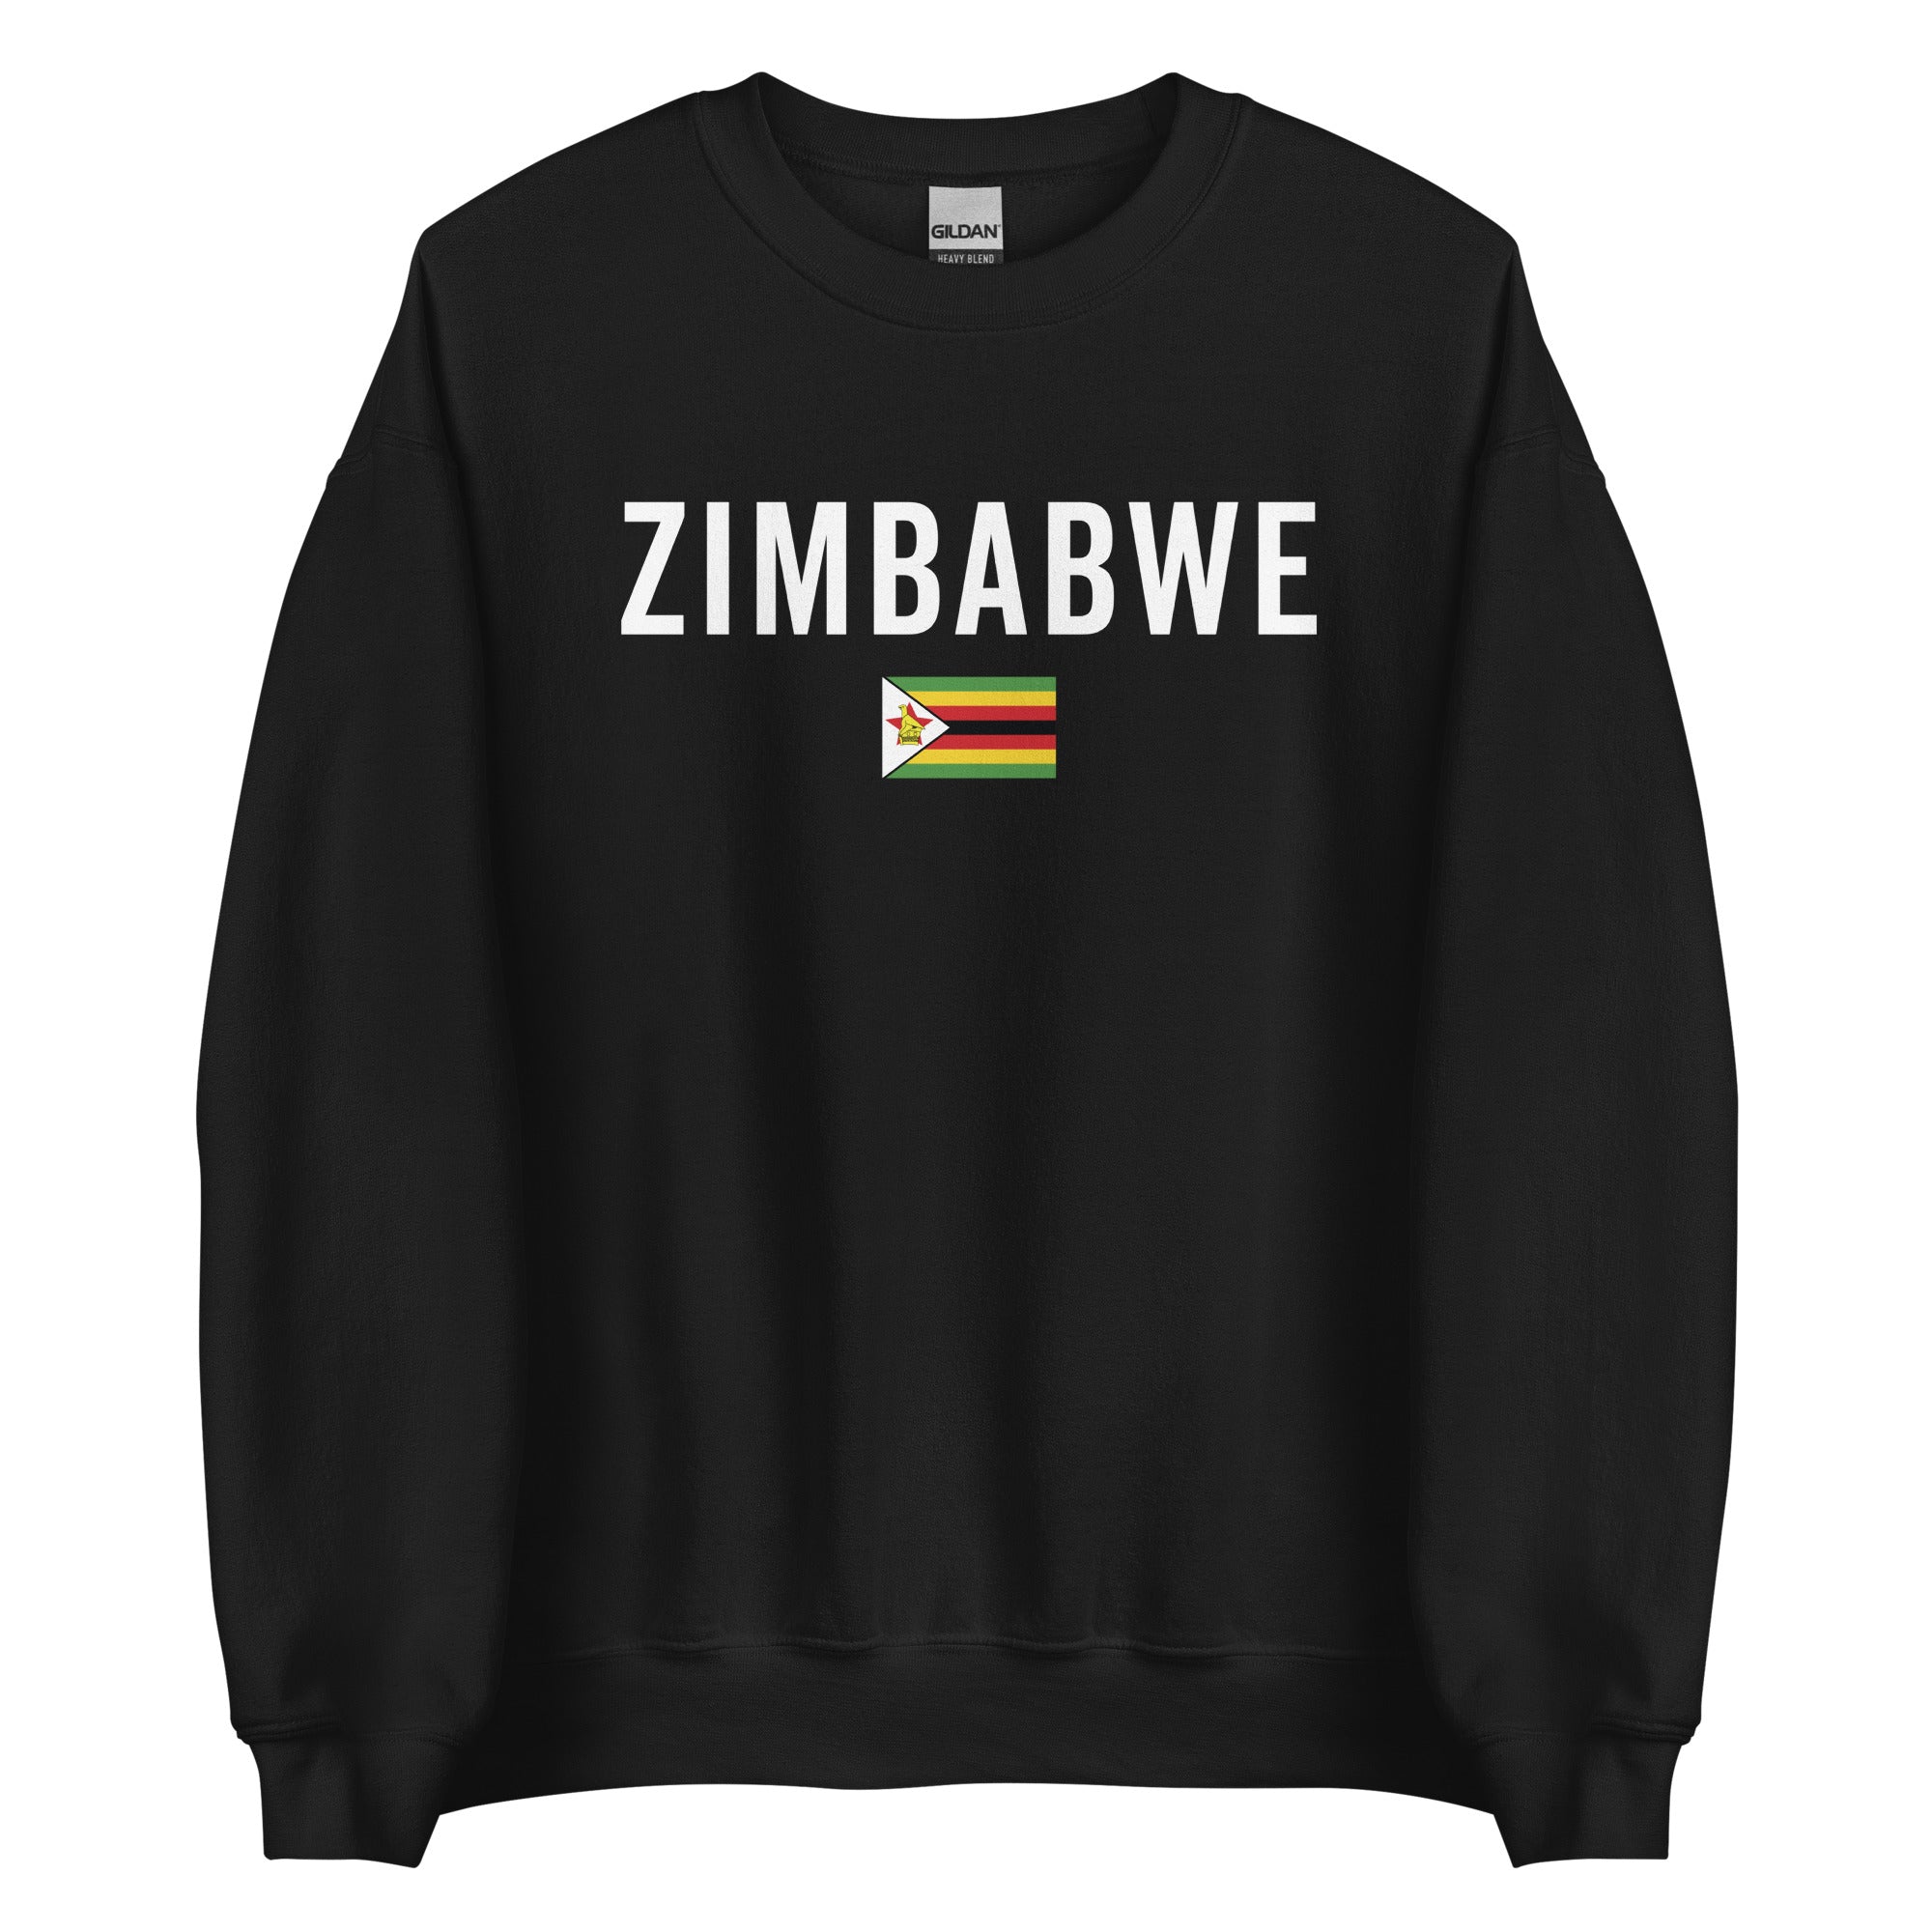 Zimbabwe Flag Sweatshirt